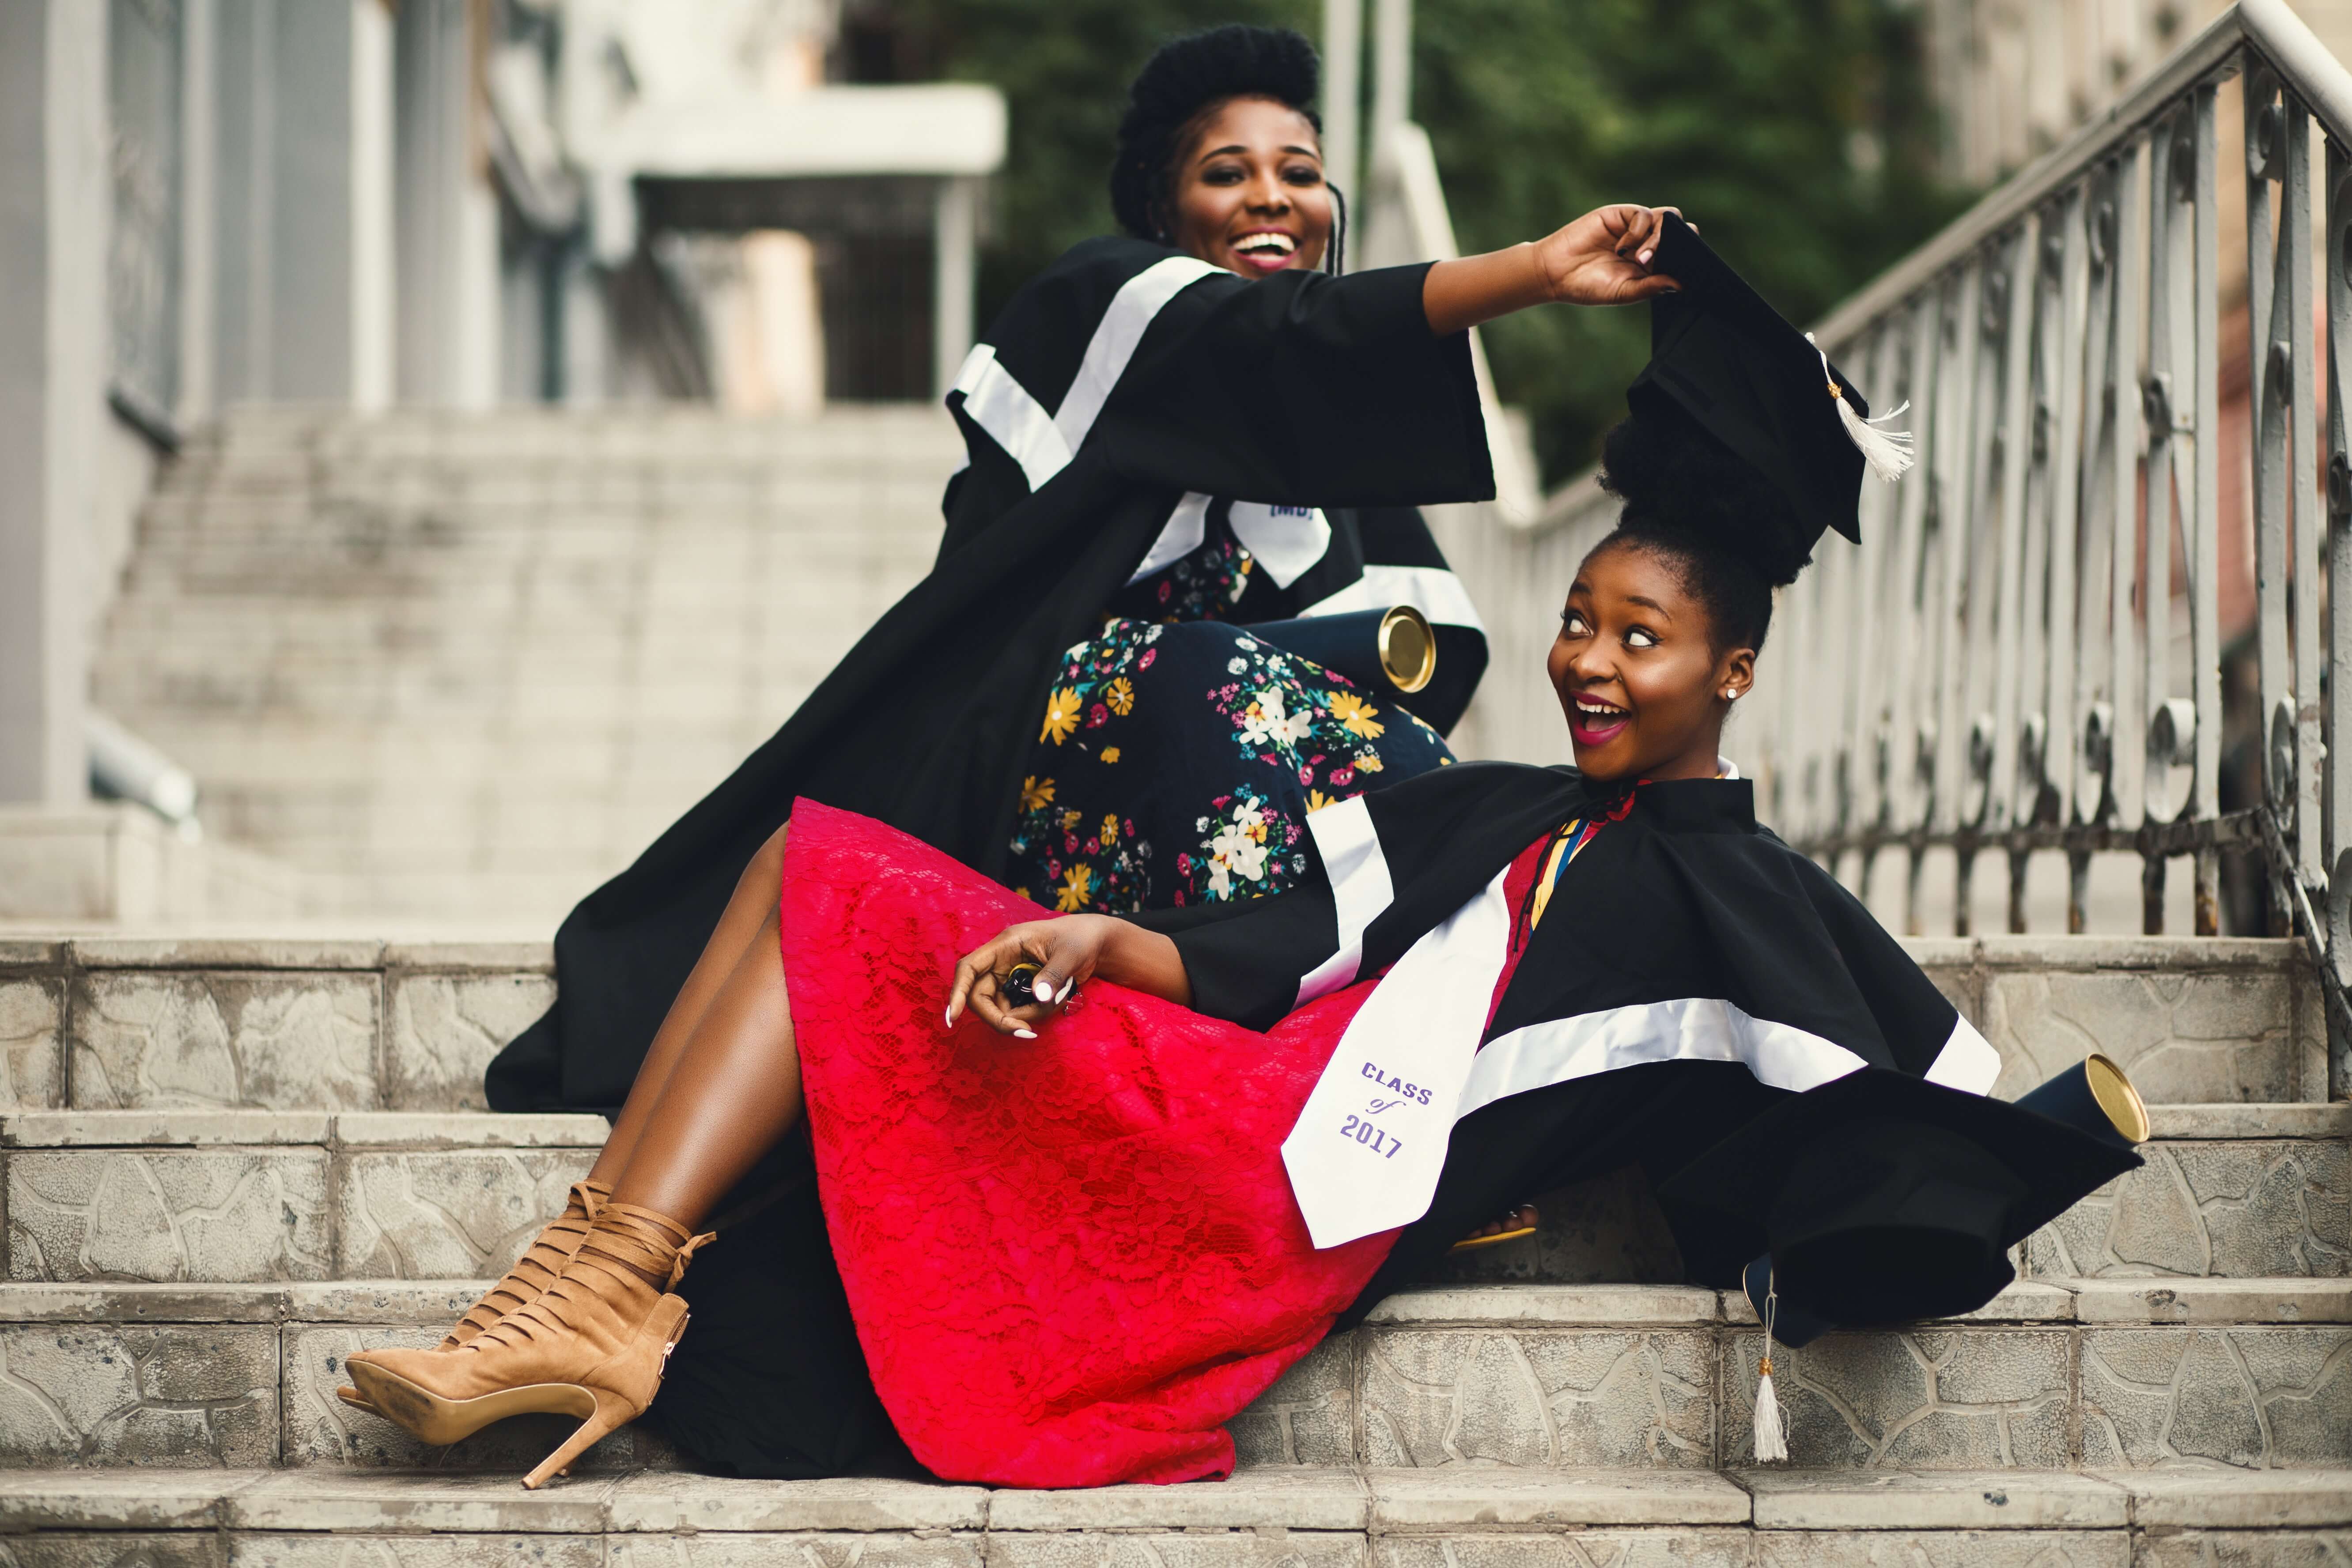 두 여성이 졸업가운과 학사모를 쓰고 장난치는 장면